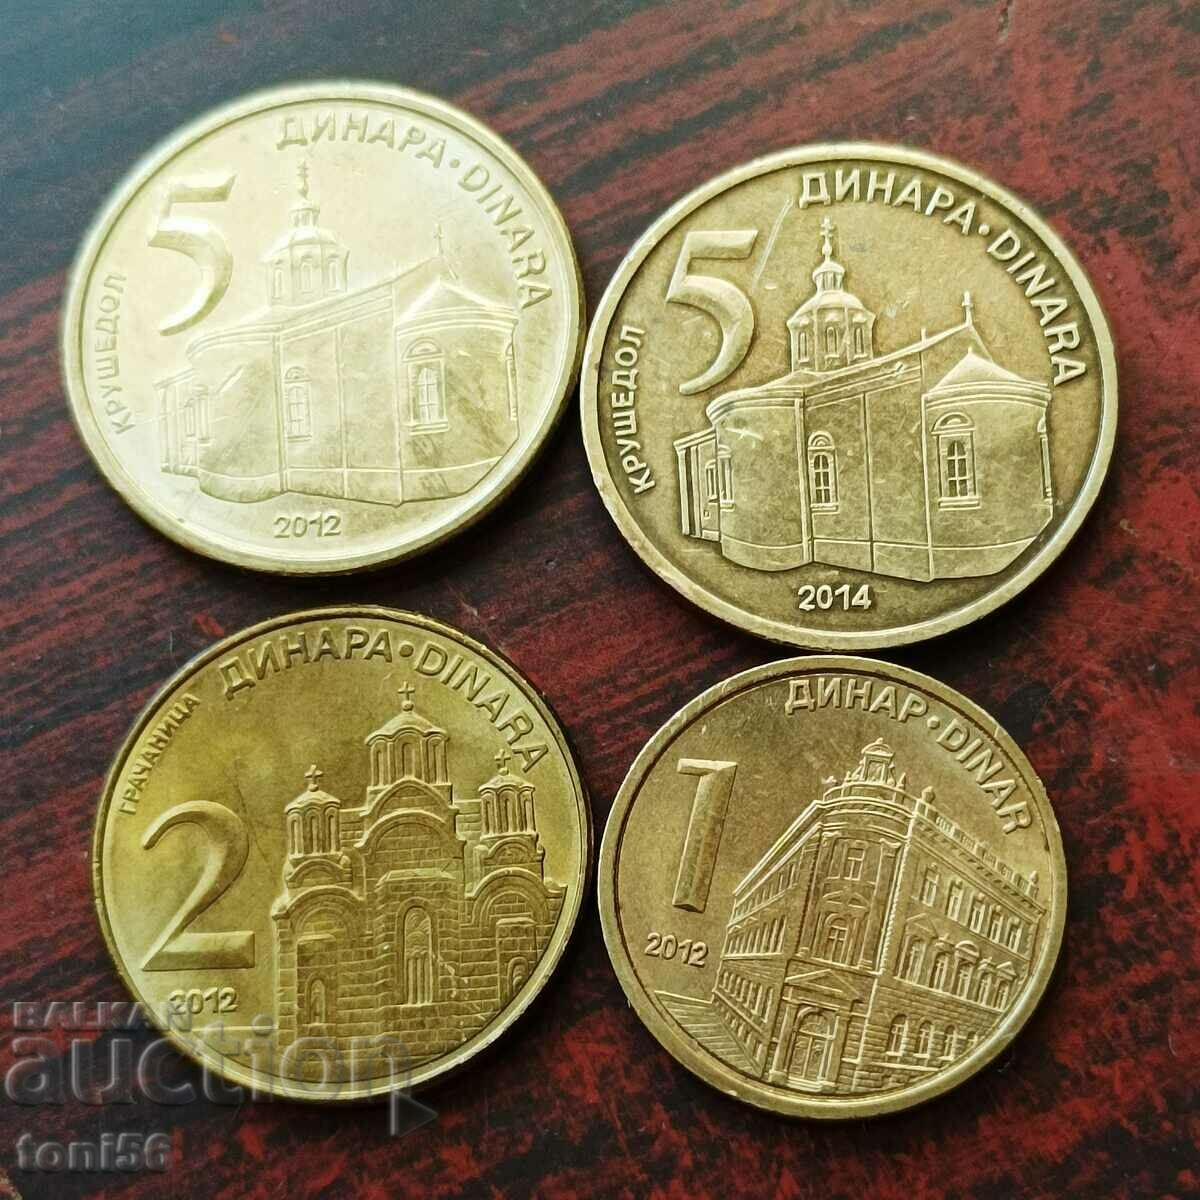 Сърбия сет 1, 2, 5, и 5 динара 2012/14 - виж описанието